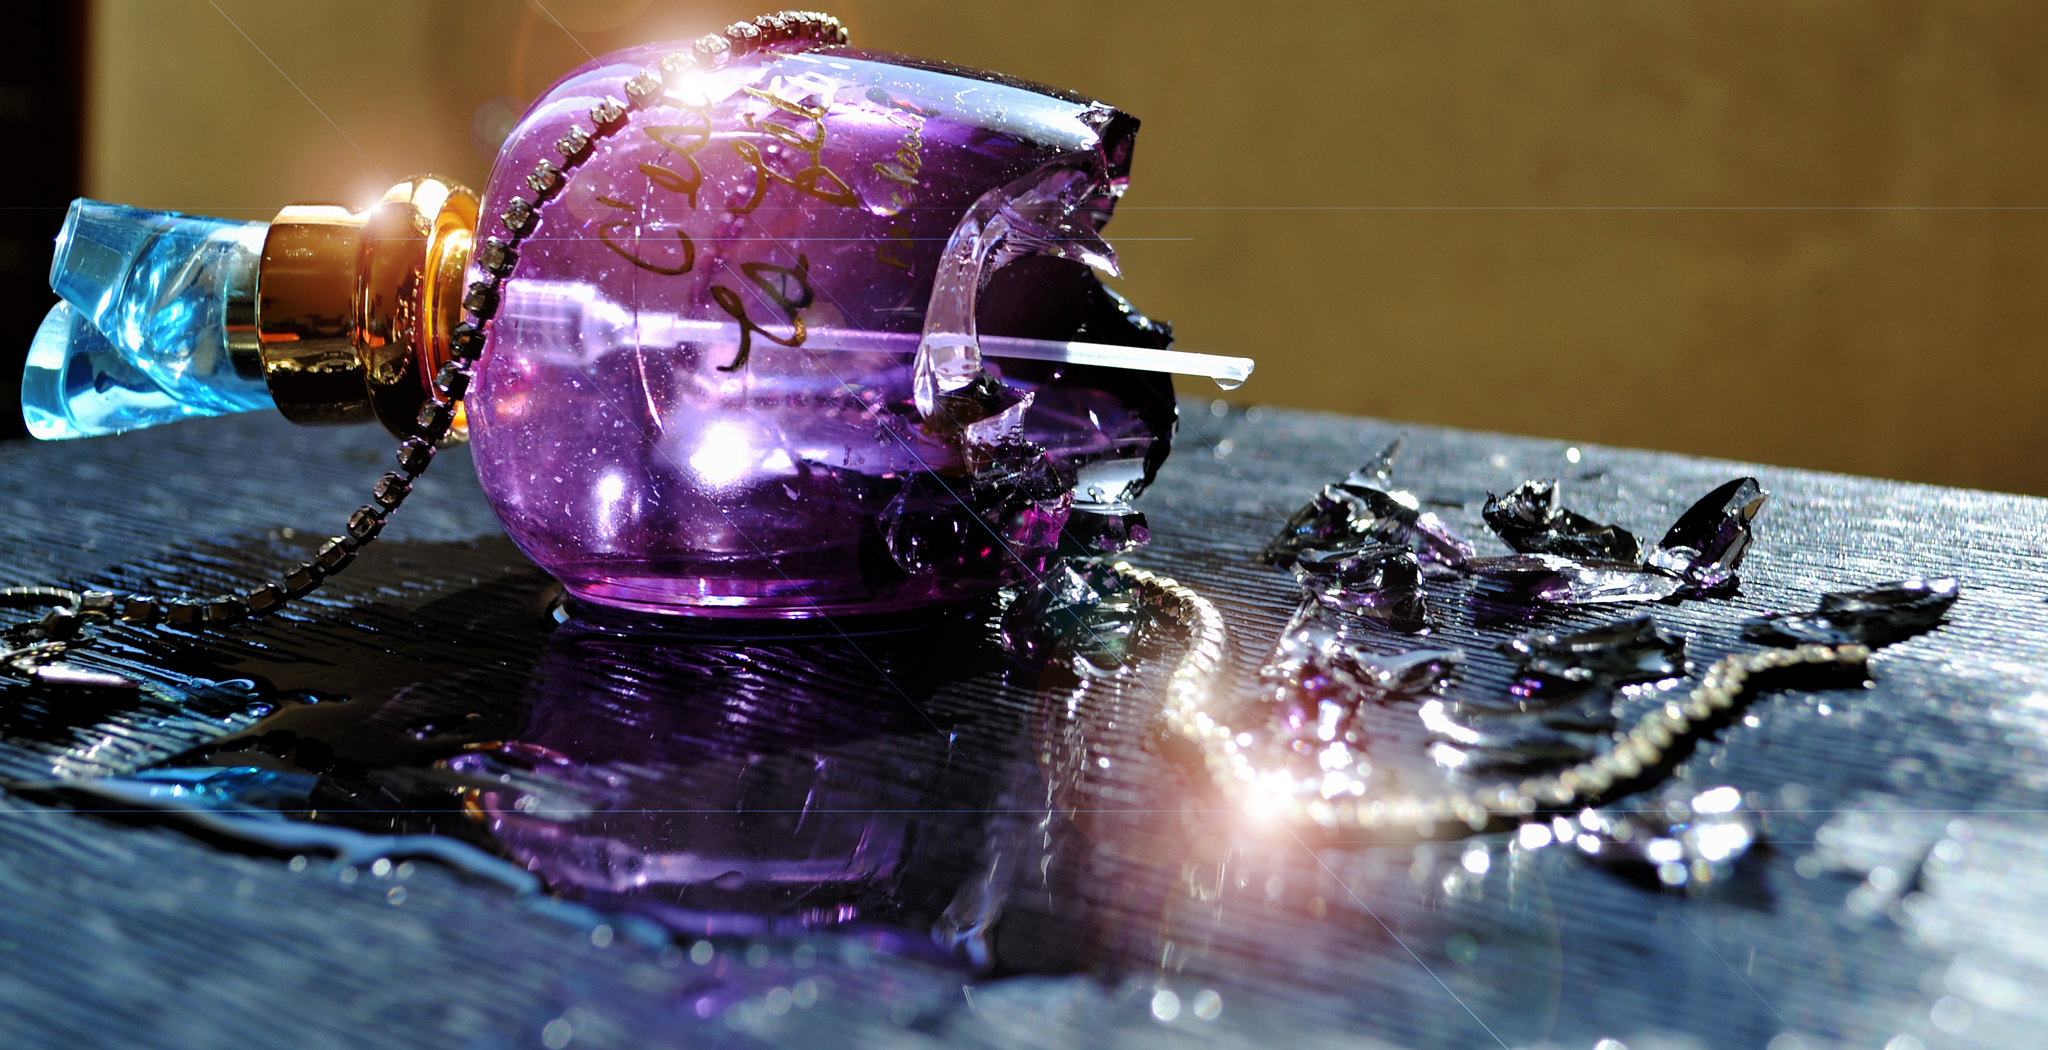 Bouteille de parfum brisée | Source : Flickr